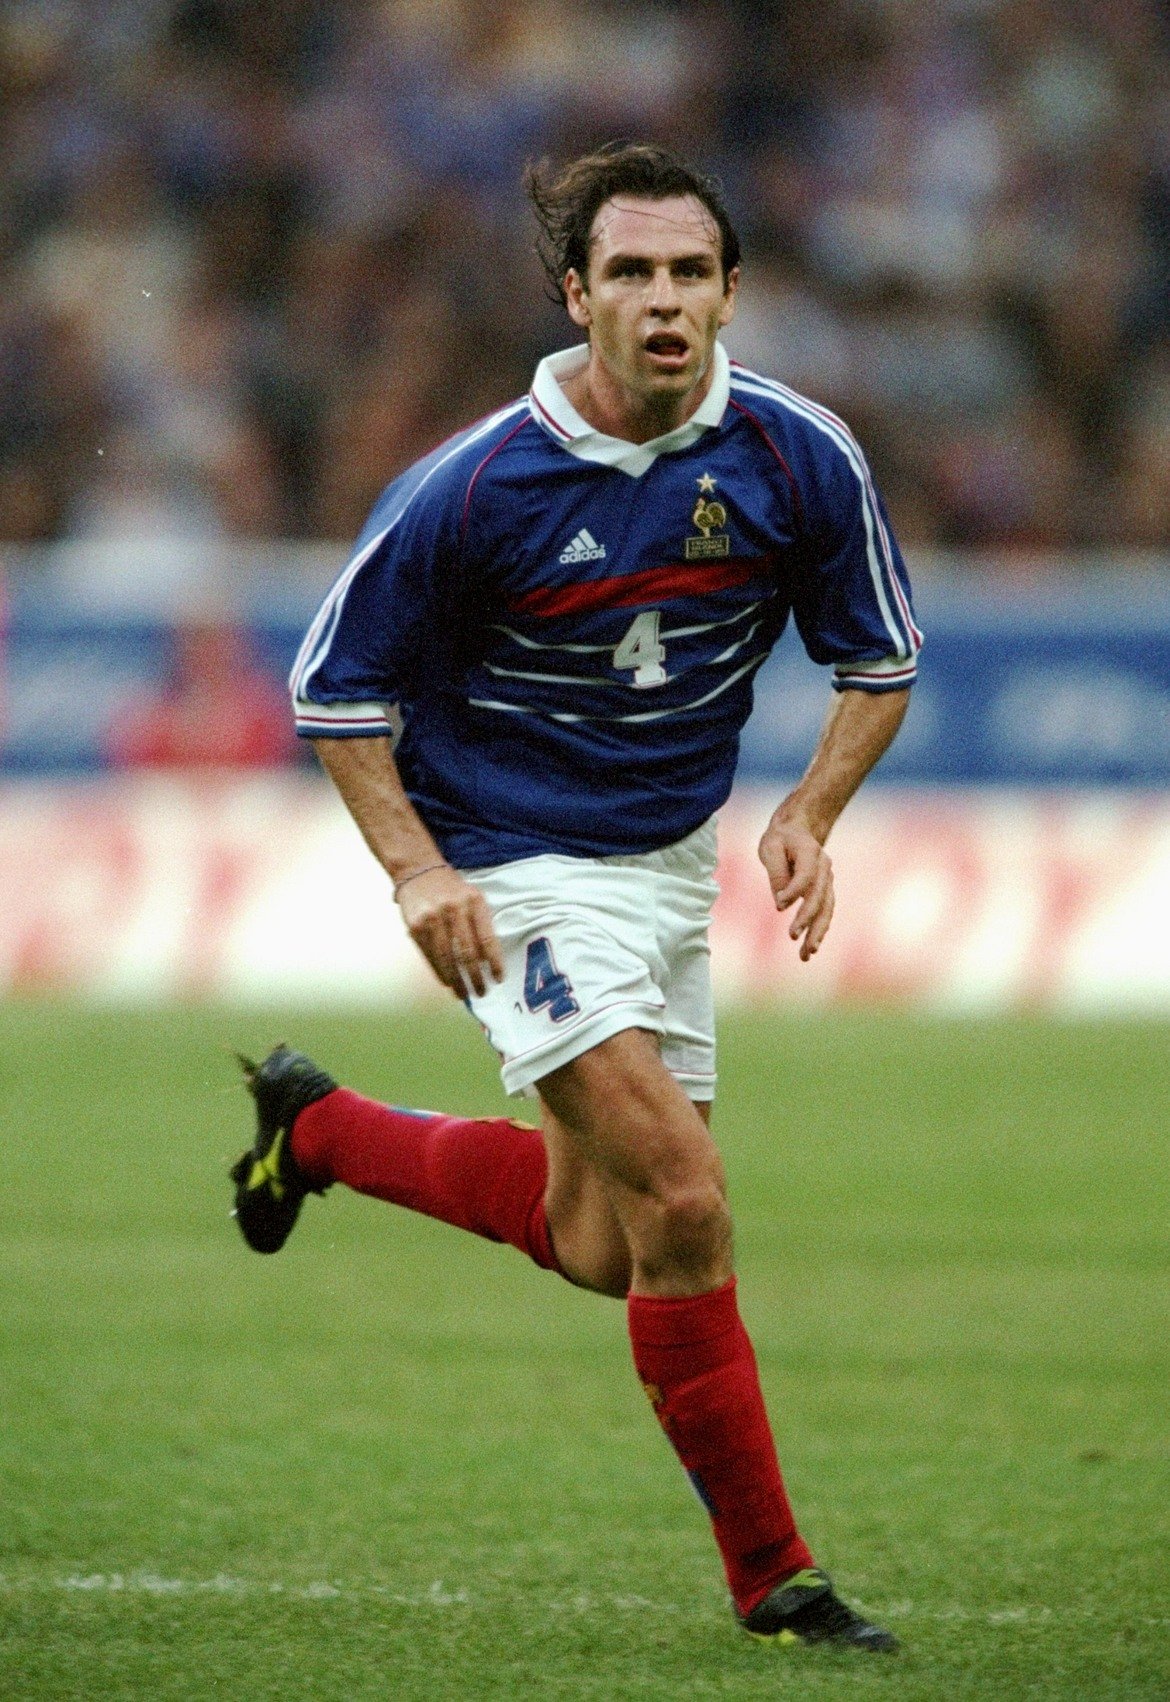 Резерва: Ален Богосян 
Влезе на мястото на Карембьо в началото на второто полувреме. В кариерата си игра за Марсилия, Истр, Наполи, Сампдория, Парма и Еспаньол, но контузиите го накараха да се откаже в началото на сезон 2003/04. Бе помощник на Реймон Доменек в националния отбор, но бе освободен след назначаването на Лоран Блан. В момента французинът с арменски корени е далеч от футбола.